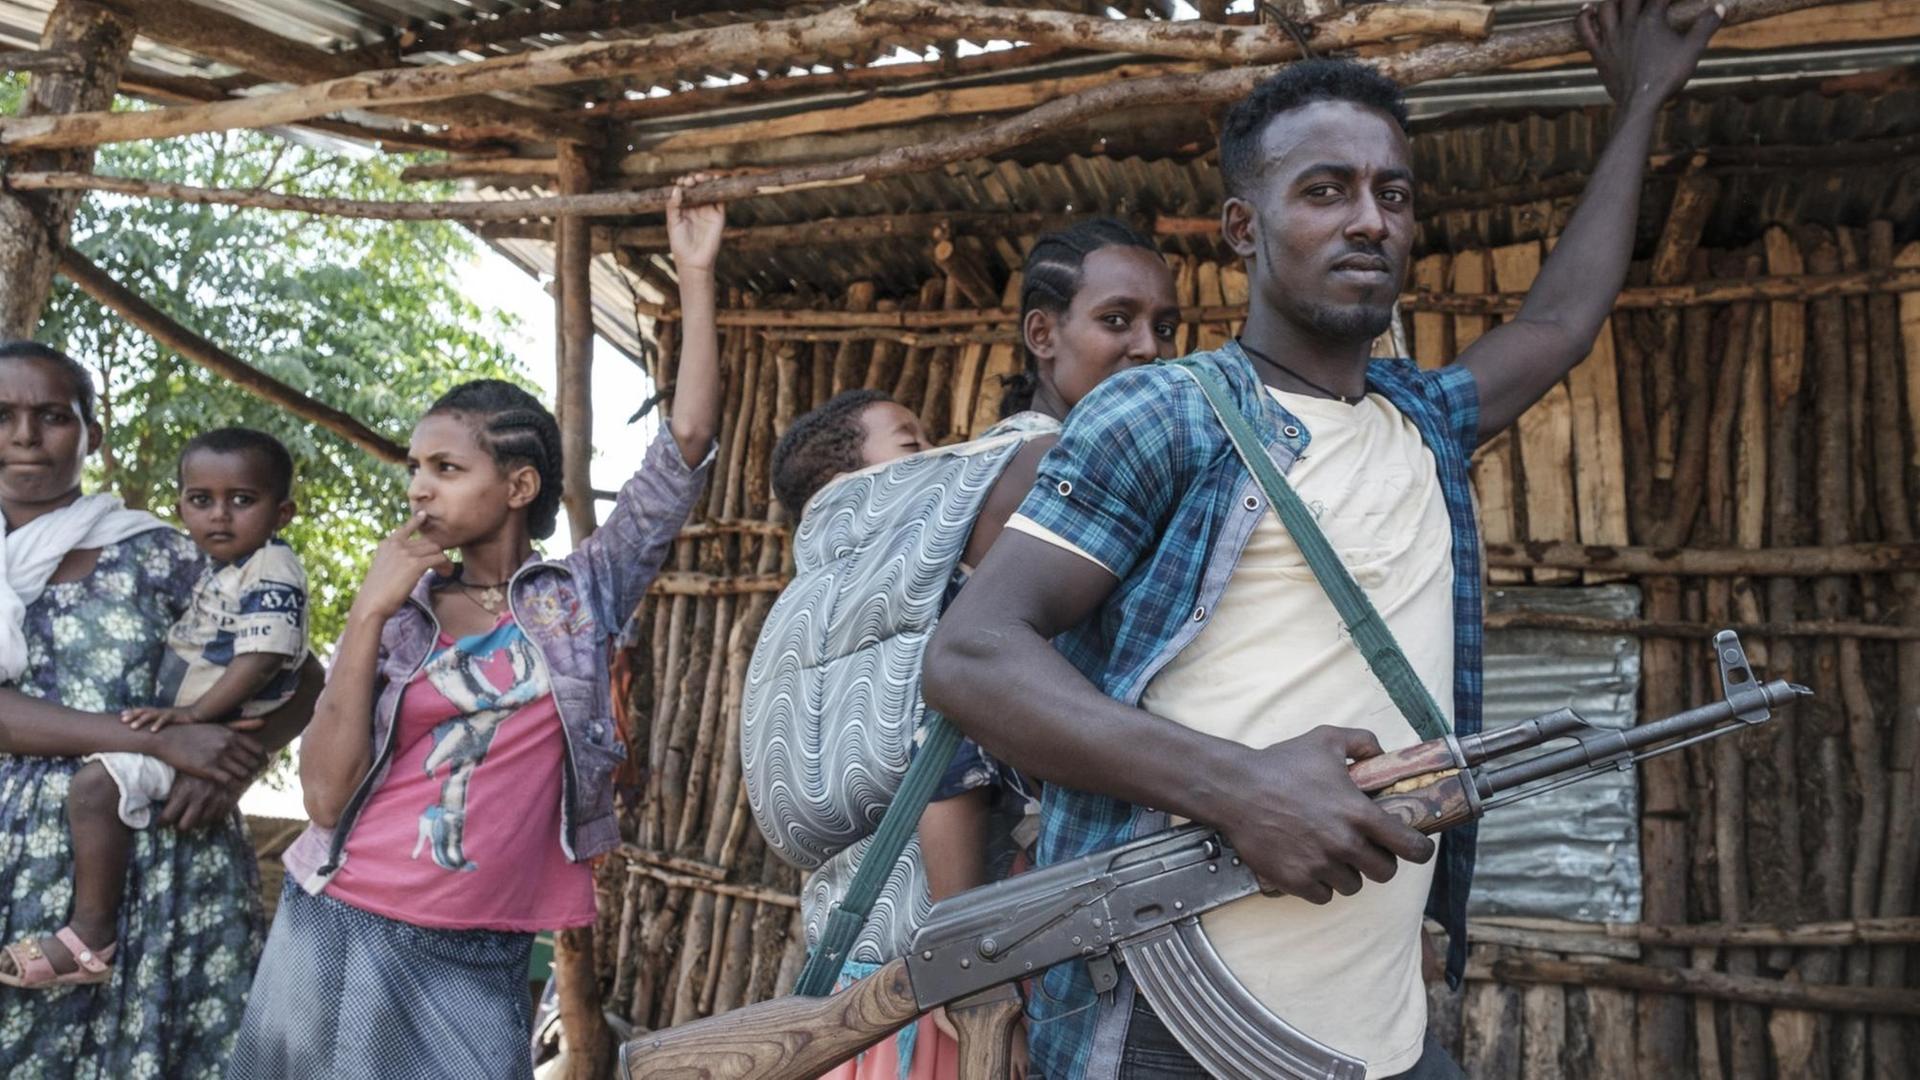 Eine Gruppe Menschen in Äthiopien. Ein Mann hat ein Gewehr in der Hand.